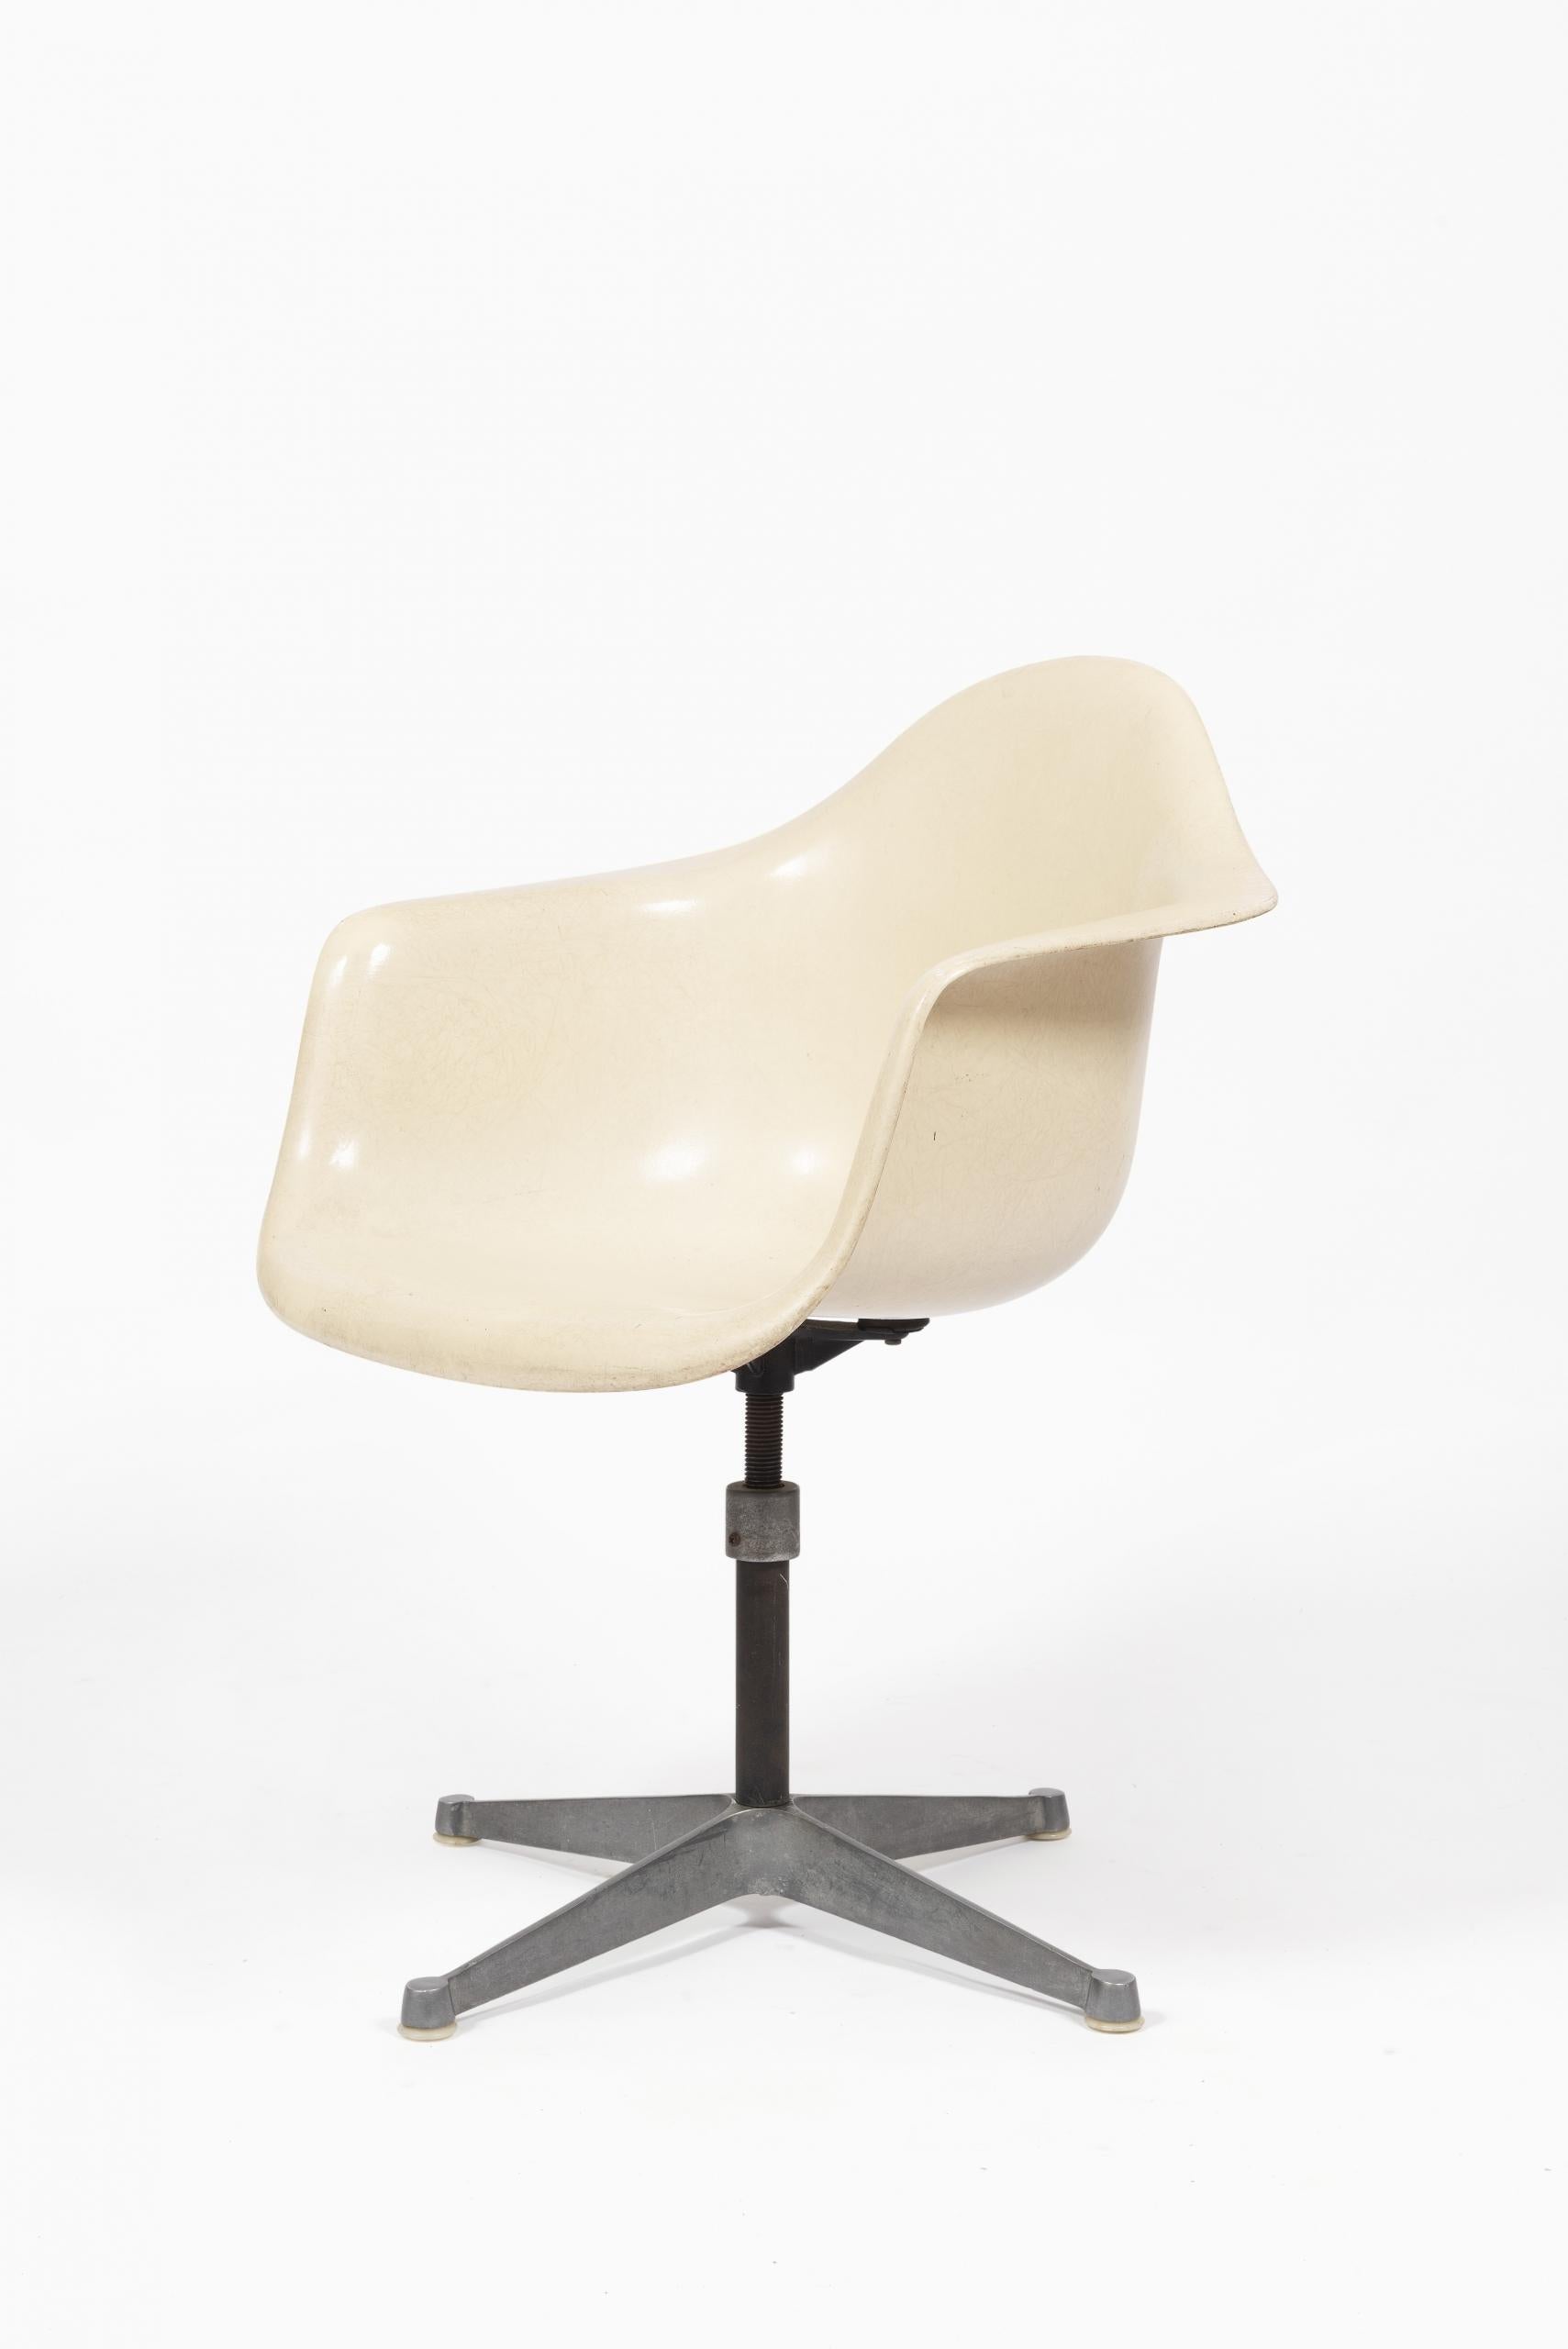 Fauteuil de bureau modèle “PAC” par les designers Charles & Ray Eames pour Herman Miller, 1960.

Matériaux : fibre de verre, métal.

Couleur : blanc cassé.

Dimensions : H 86 x L 63 x P 5 cm.